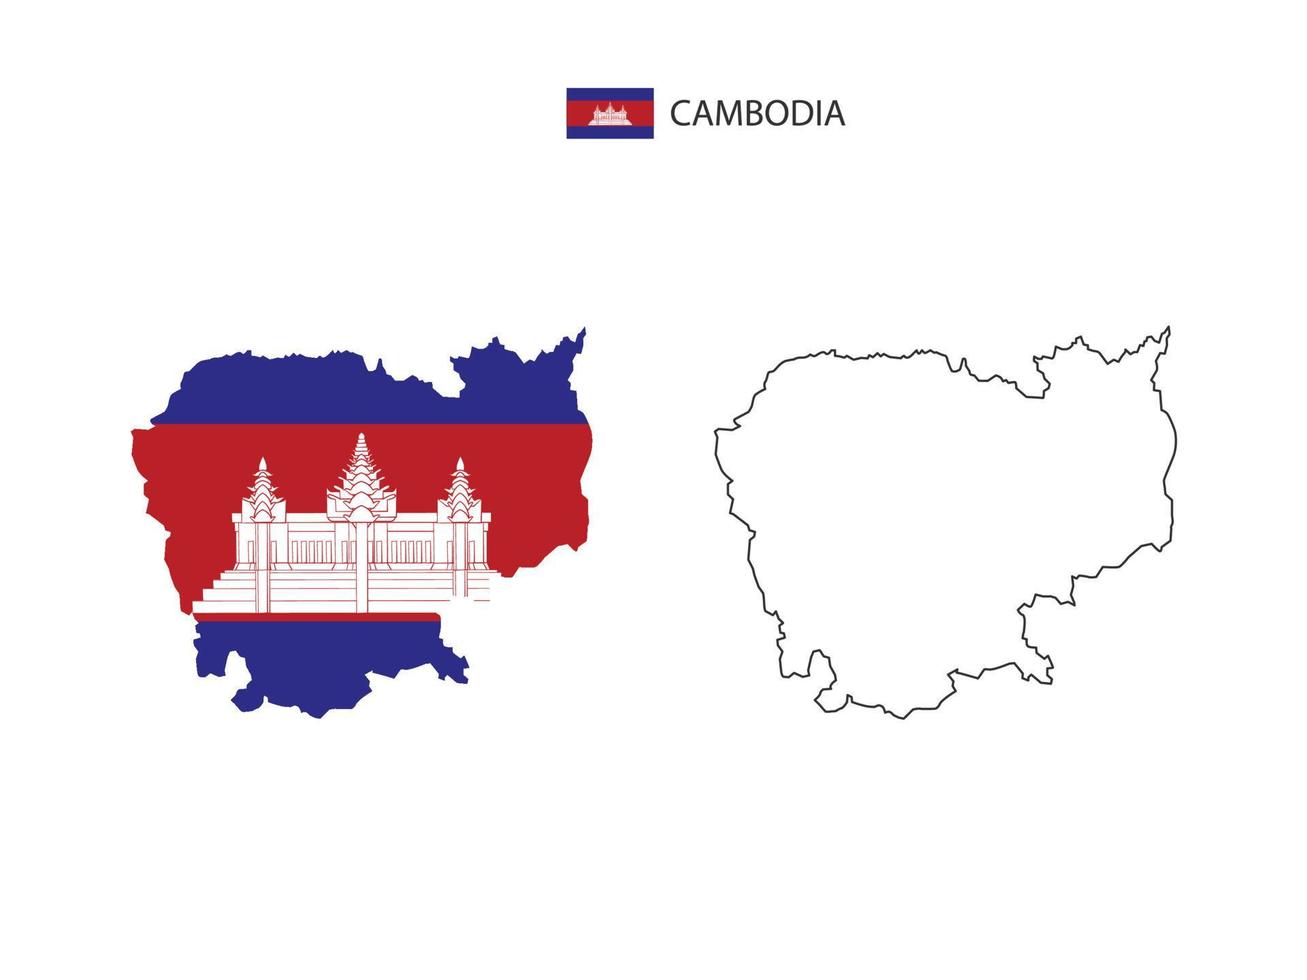 vetor da cidade do mapa do Camboja dividido pelo estilo de simplicidade do esboço. tem 2 versões, versão de linha fina preta e cor da versão da bandeira do país. ambos os mapas estavam no fundo branco.